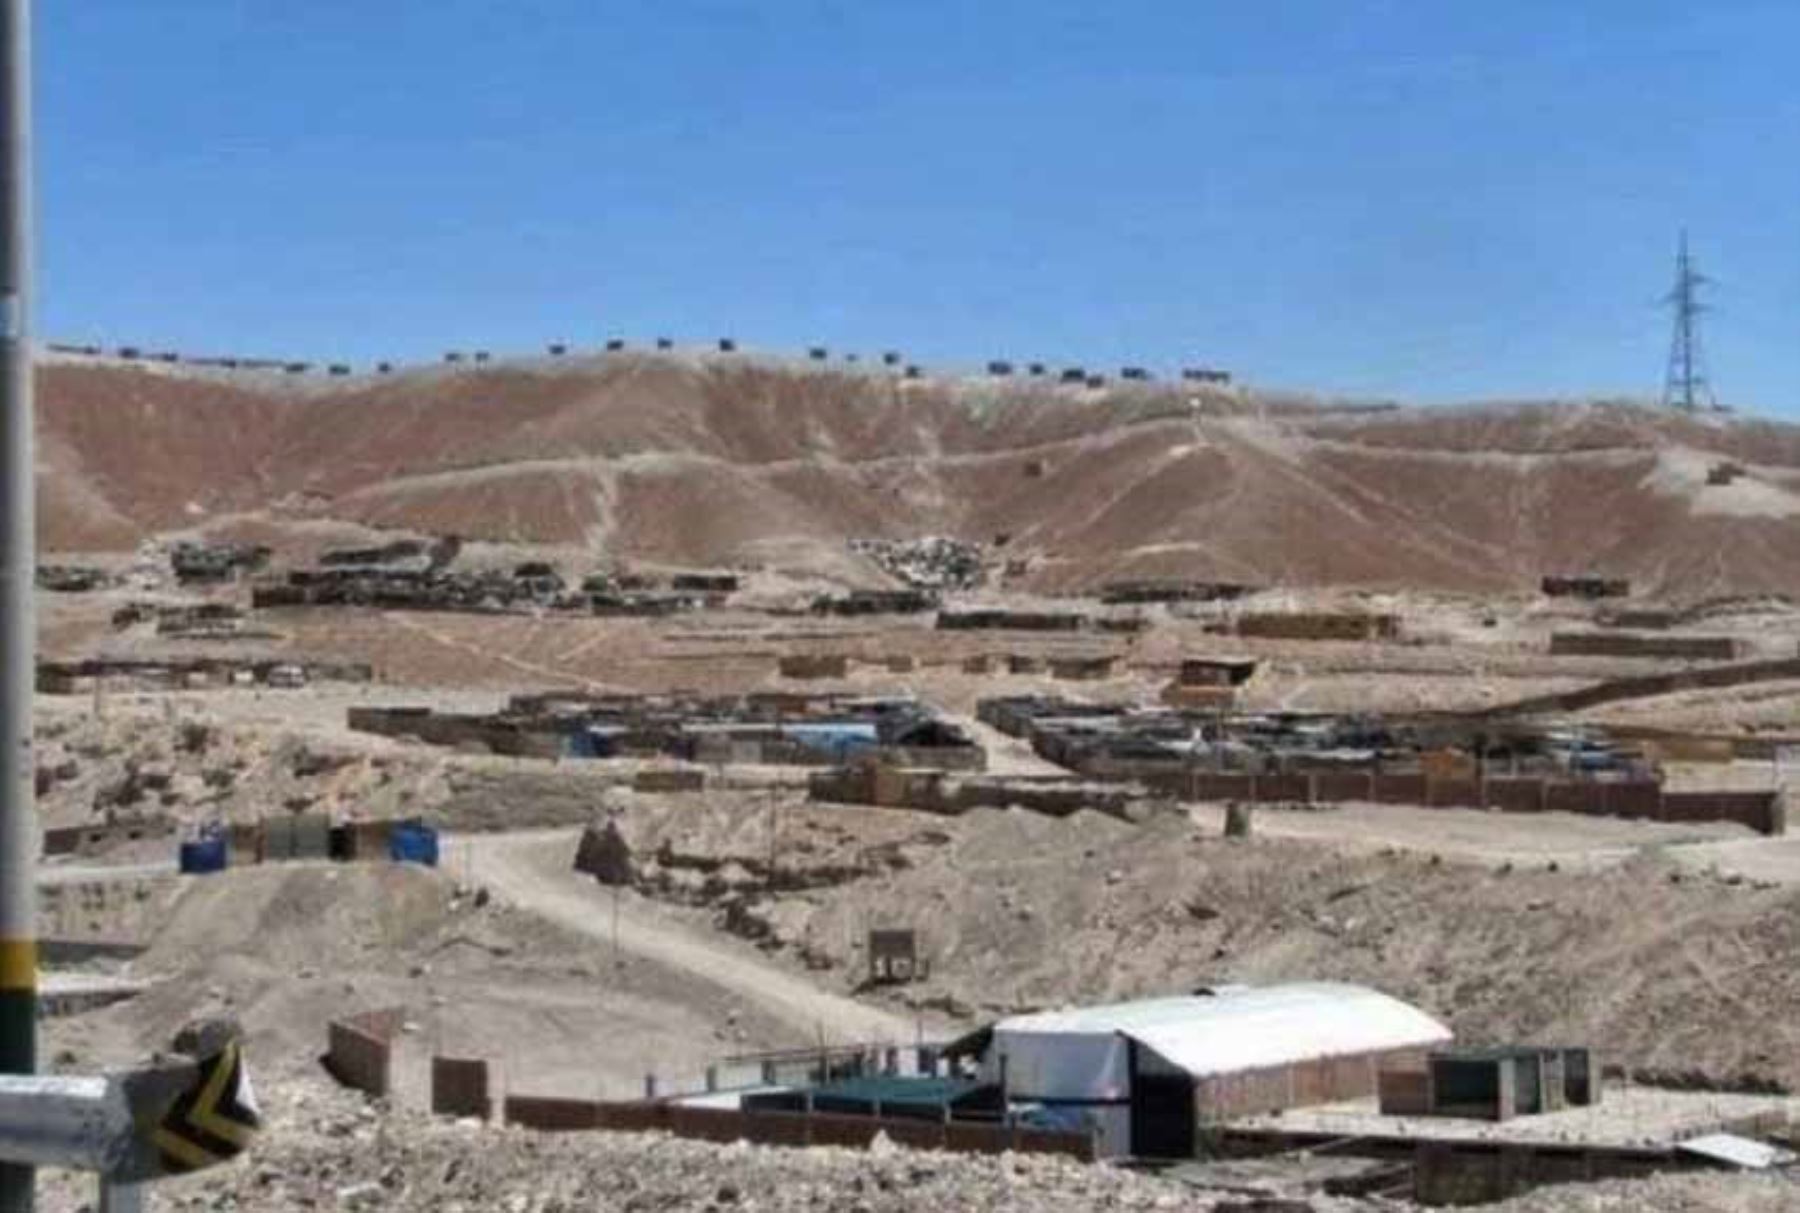 Dos viviendas ubicadas en la provincia de Mariscal Nieto, región Moquegua, resultaron afectadas en sus estructuras como consecuencia de los fuertes sismos registrados esta madrugada al sureste de la región Tacna, informó hoy el Instituto Nacional de Defensa Civil (Indeci). ANDINA/Difusión